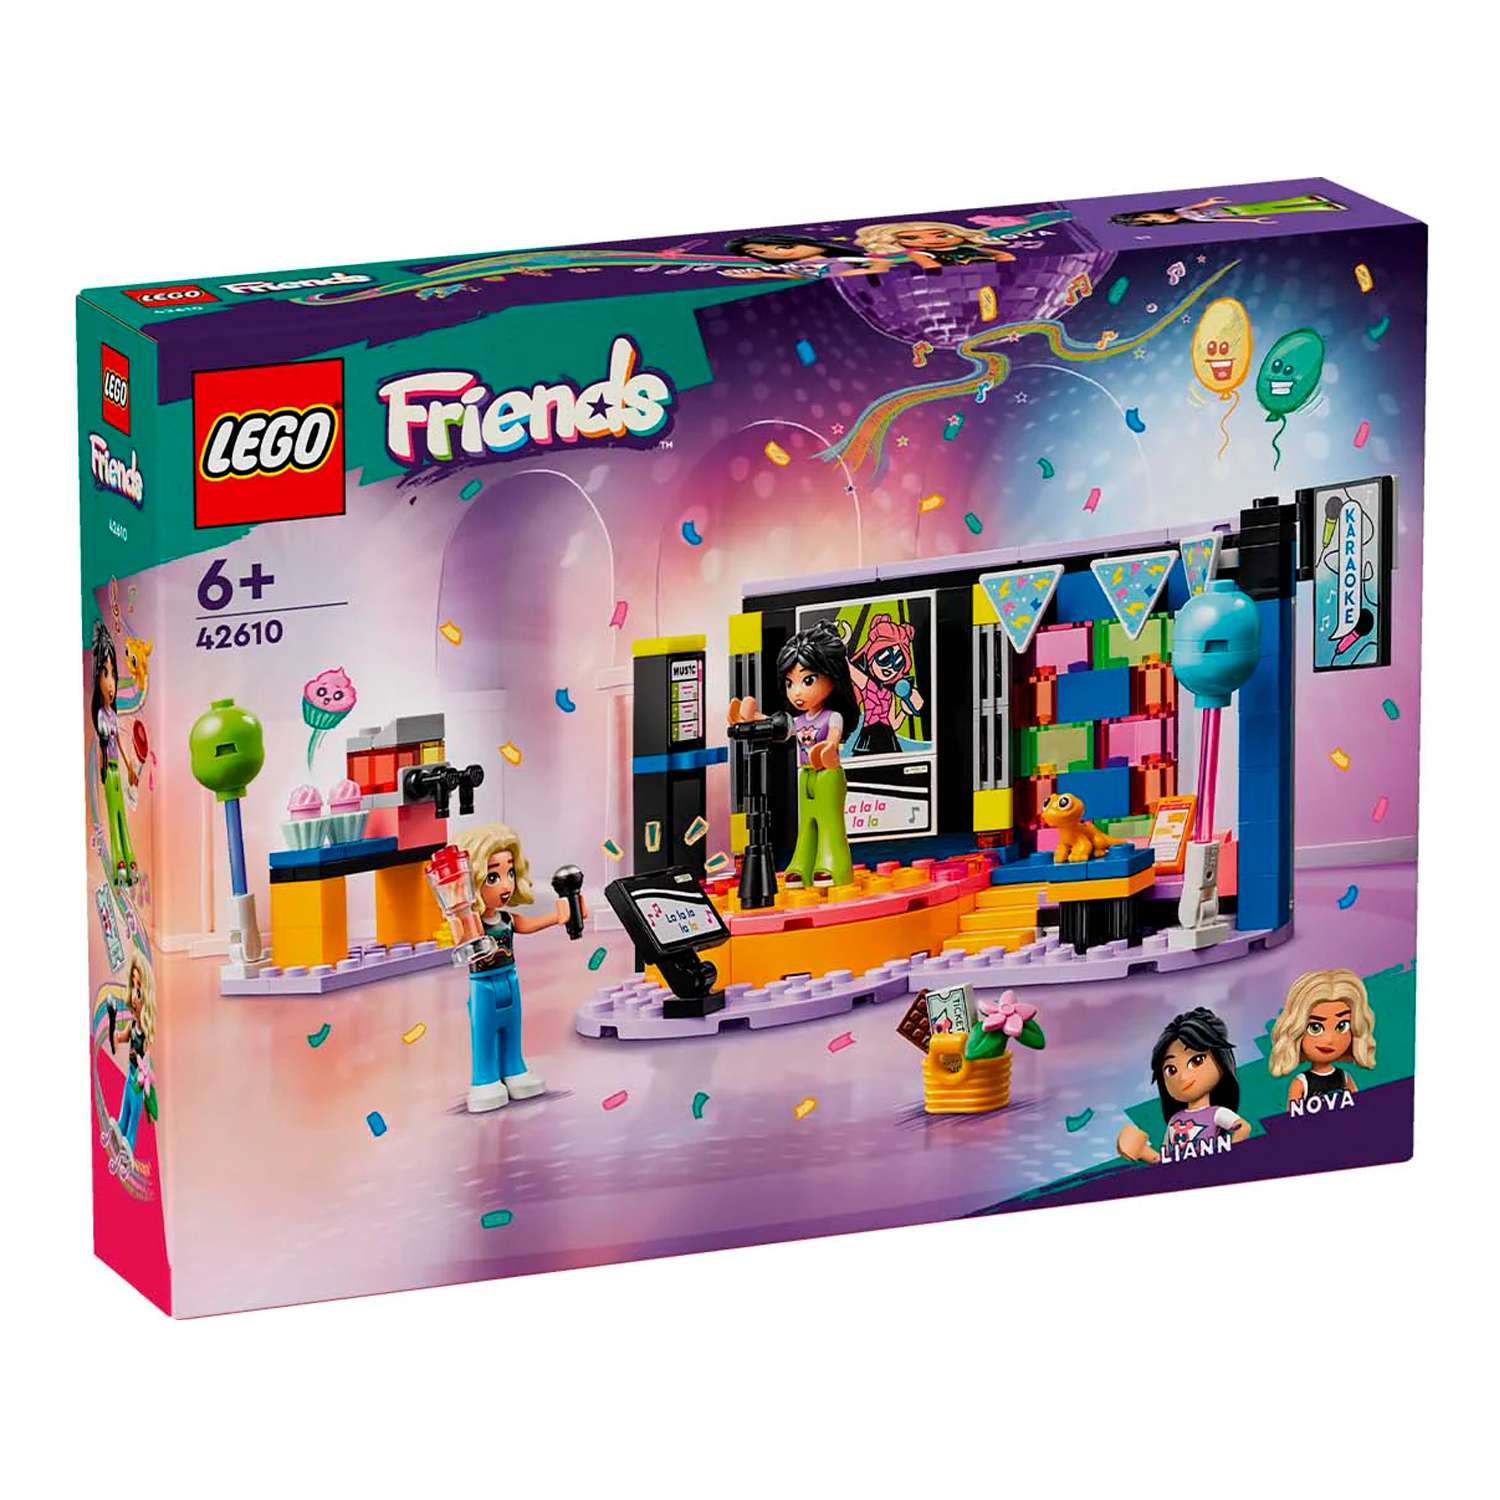 Конструктор детский LEGO Friends Музыкальная вечеринка 42610 - фото 11